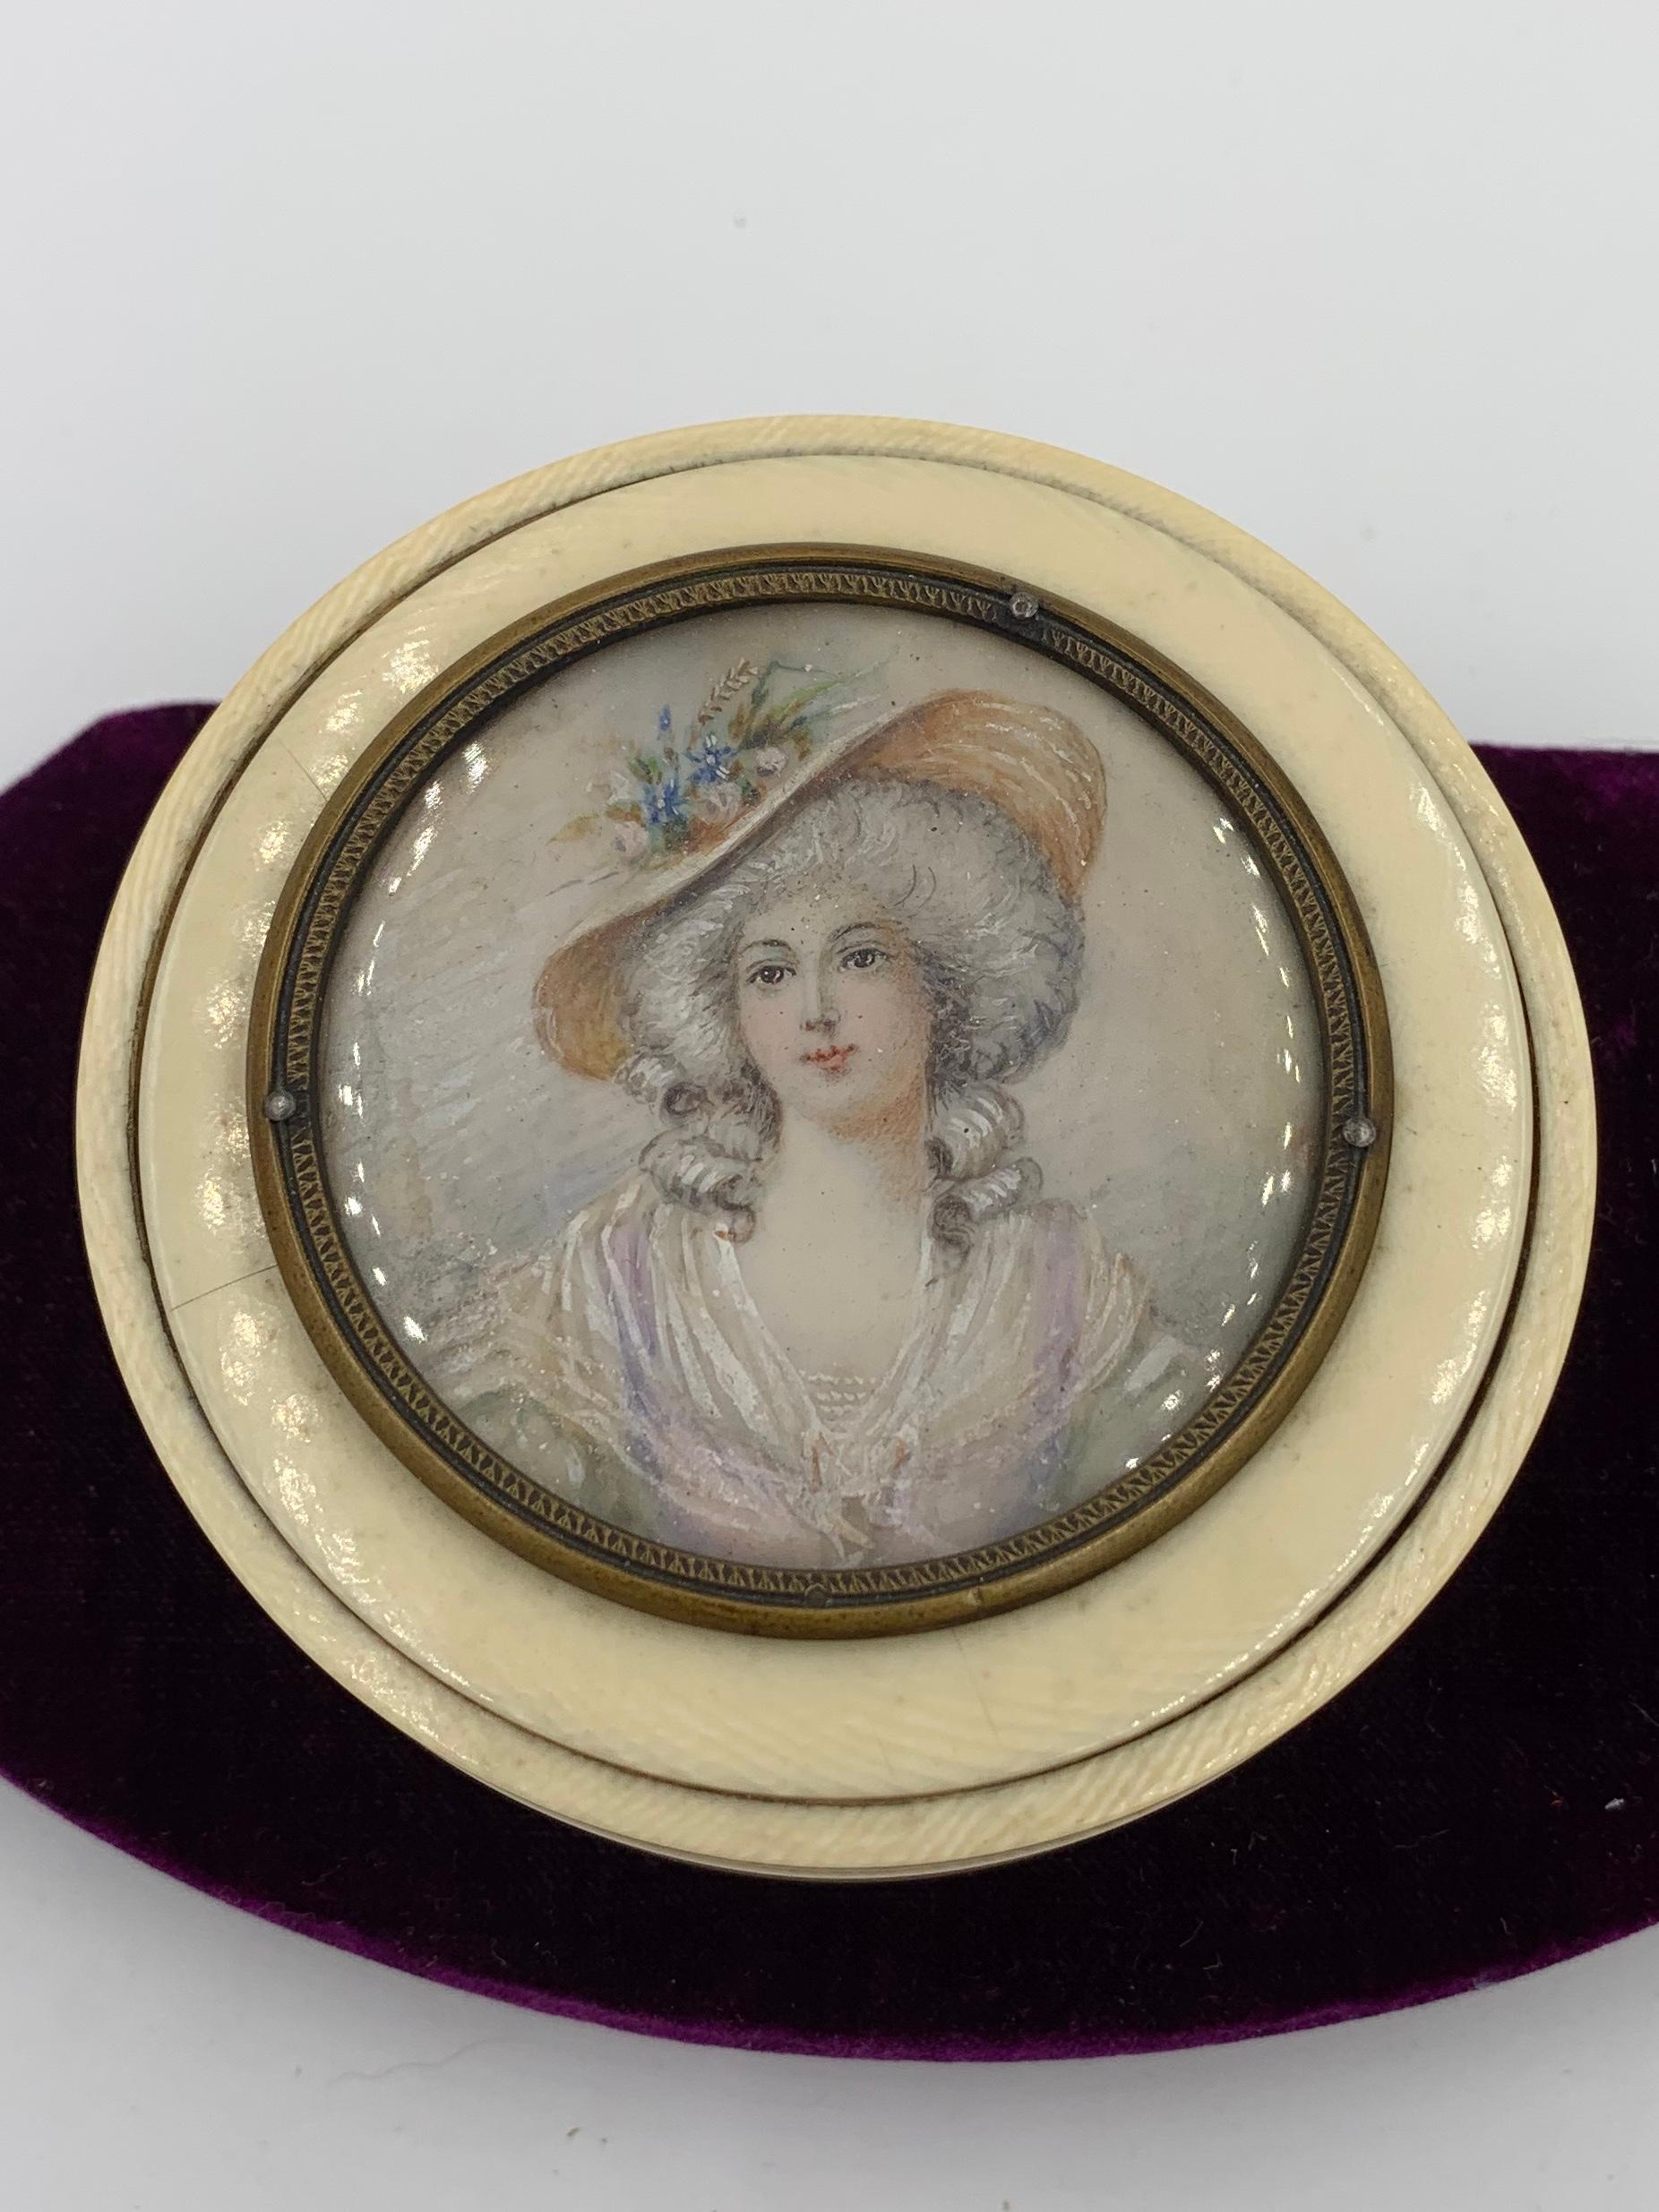 Eine schöne Kommodenschachtel mit einer handgemalten Porträtminiatur einer Frau in ihrem Hut.  Die Miniatur ist wunderschön gemacht, mit einem hübschen Gesicht, einem prächtigen Hut und einem atemberaubenden, durchsichtigen Kleid.  Die Qualität des